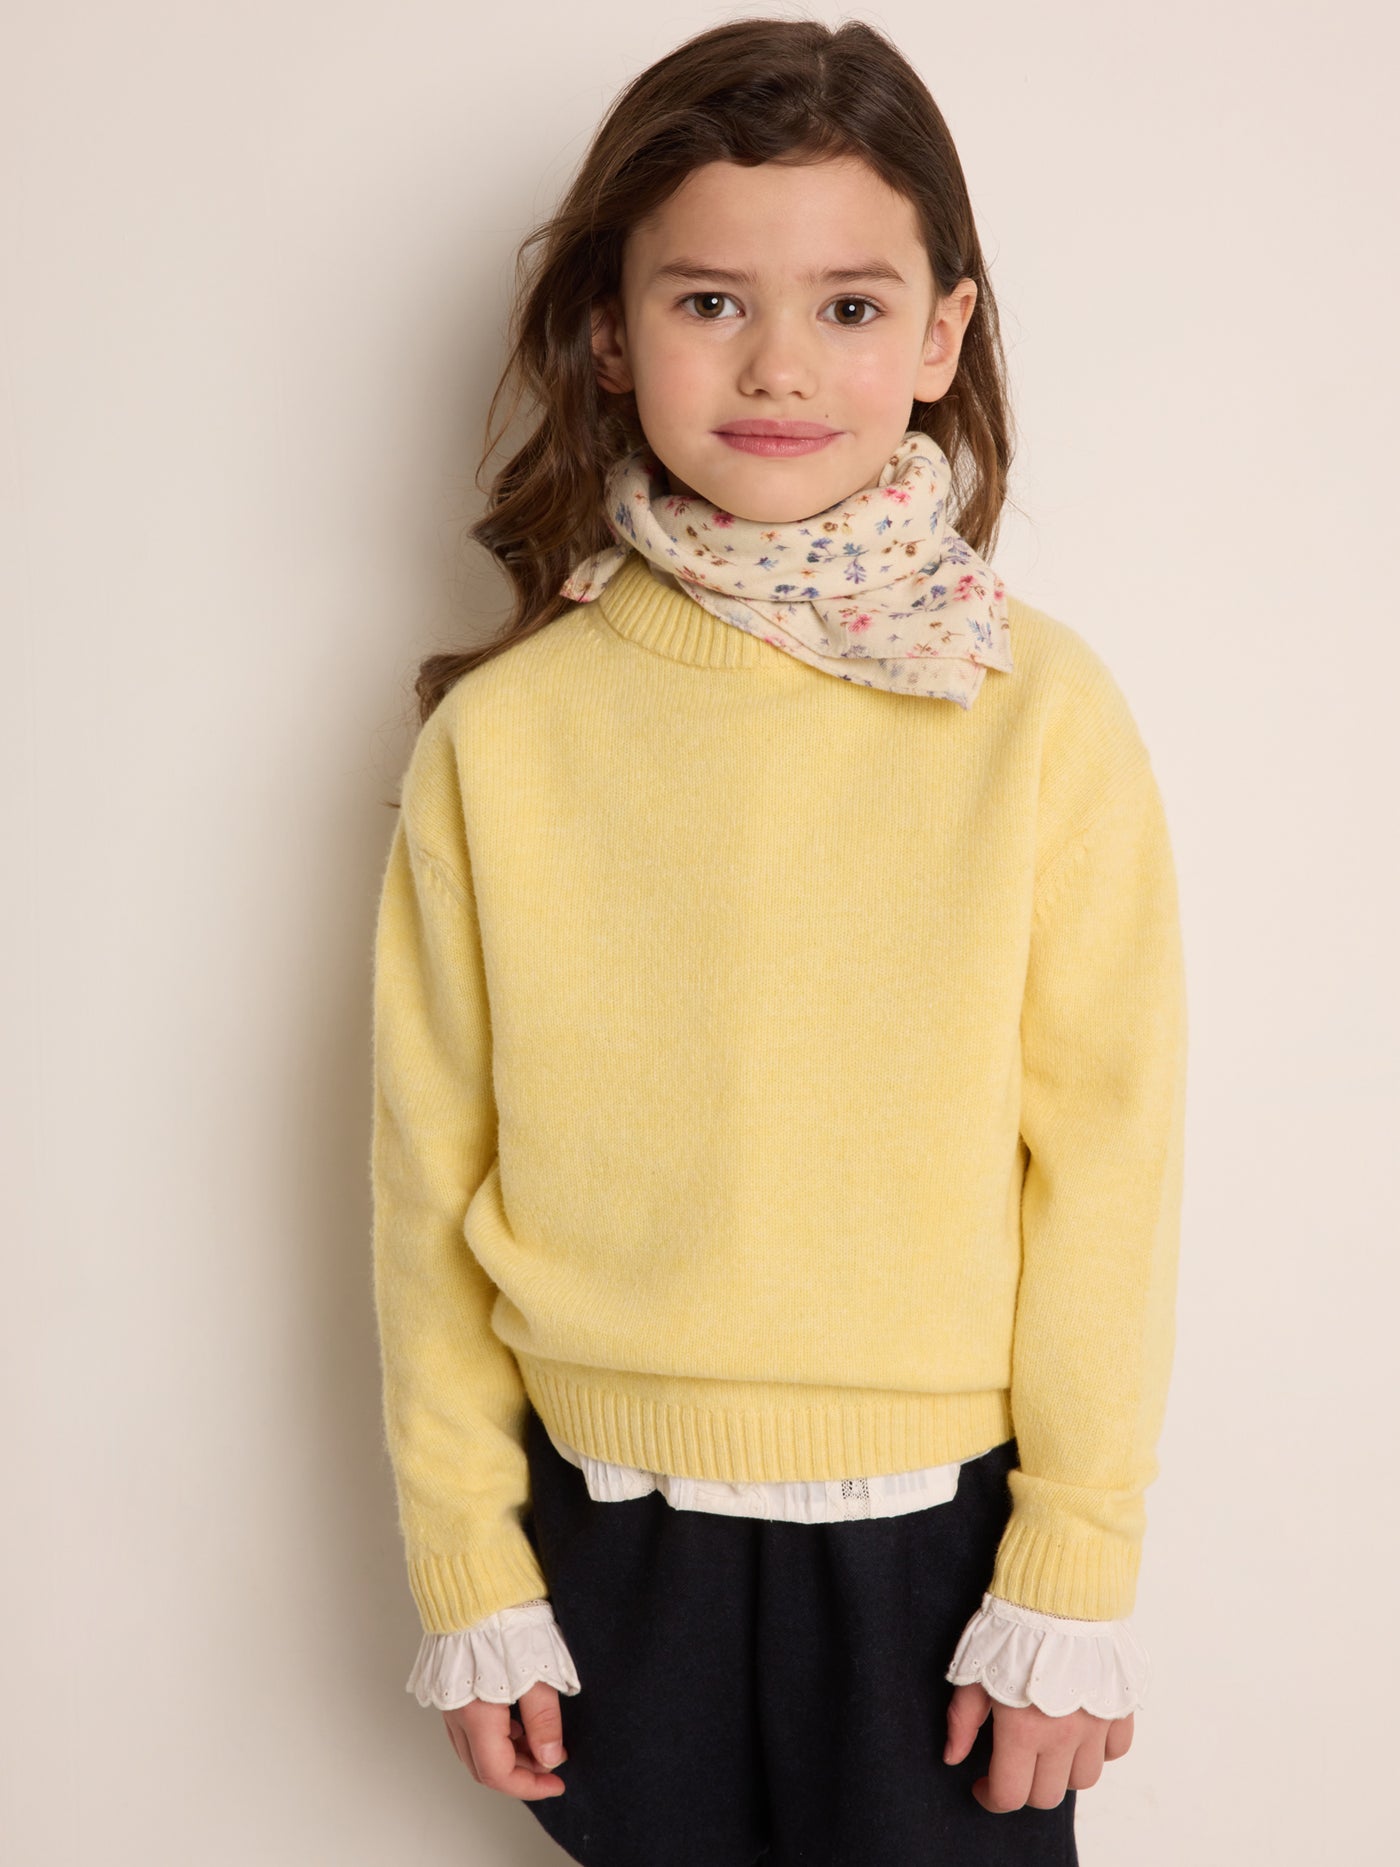 Anumati Sweater yellow